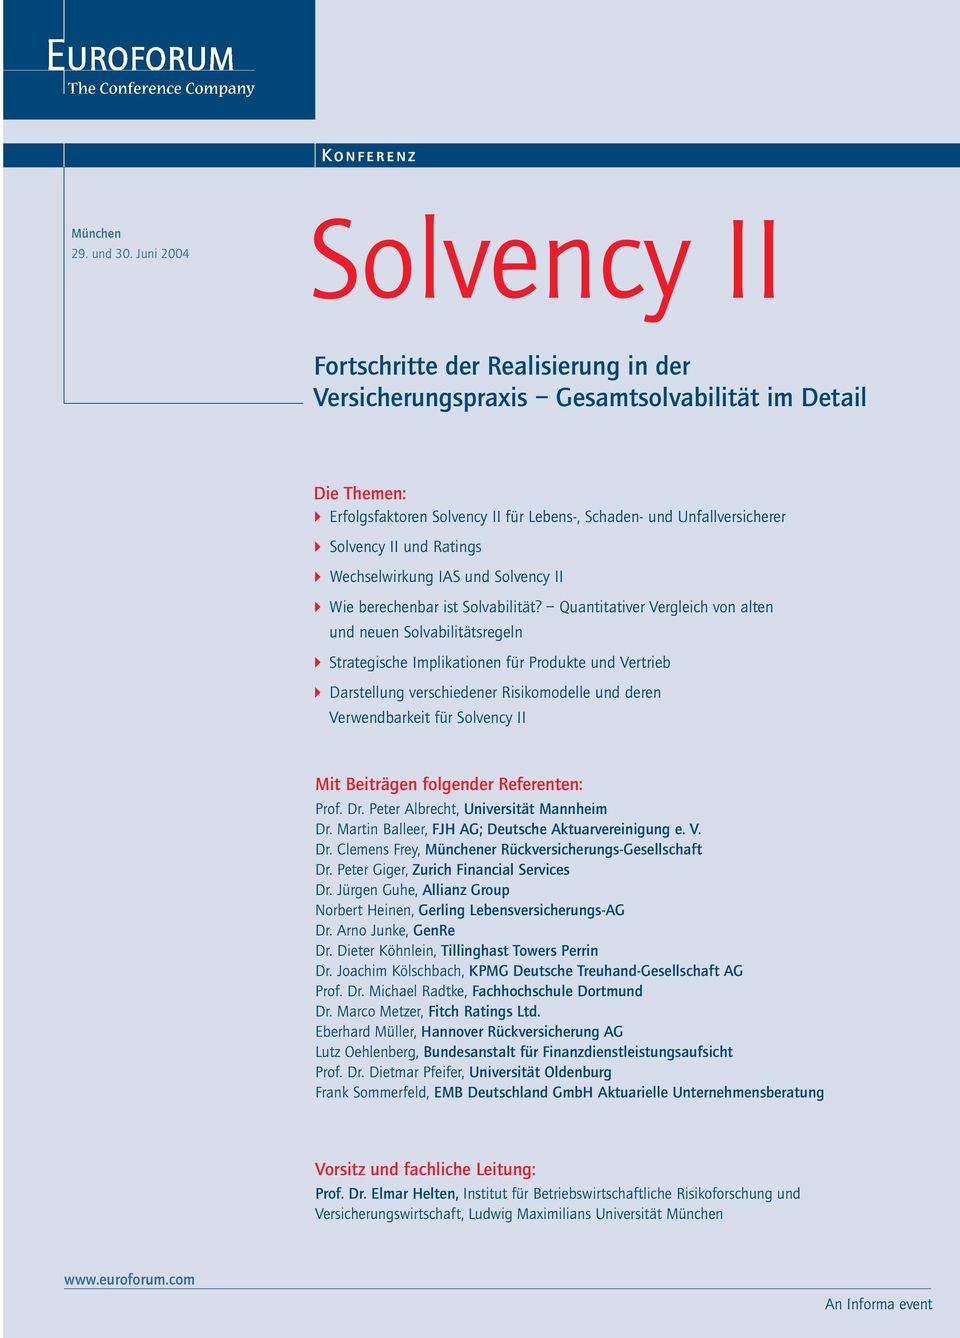 Solvency II und Ratings Wechselwirkung IAS und Solvency II Wie berechenbar ist Solvabilität?